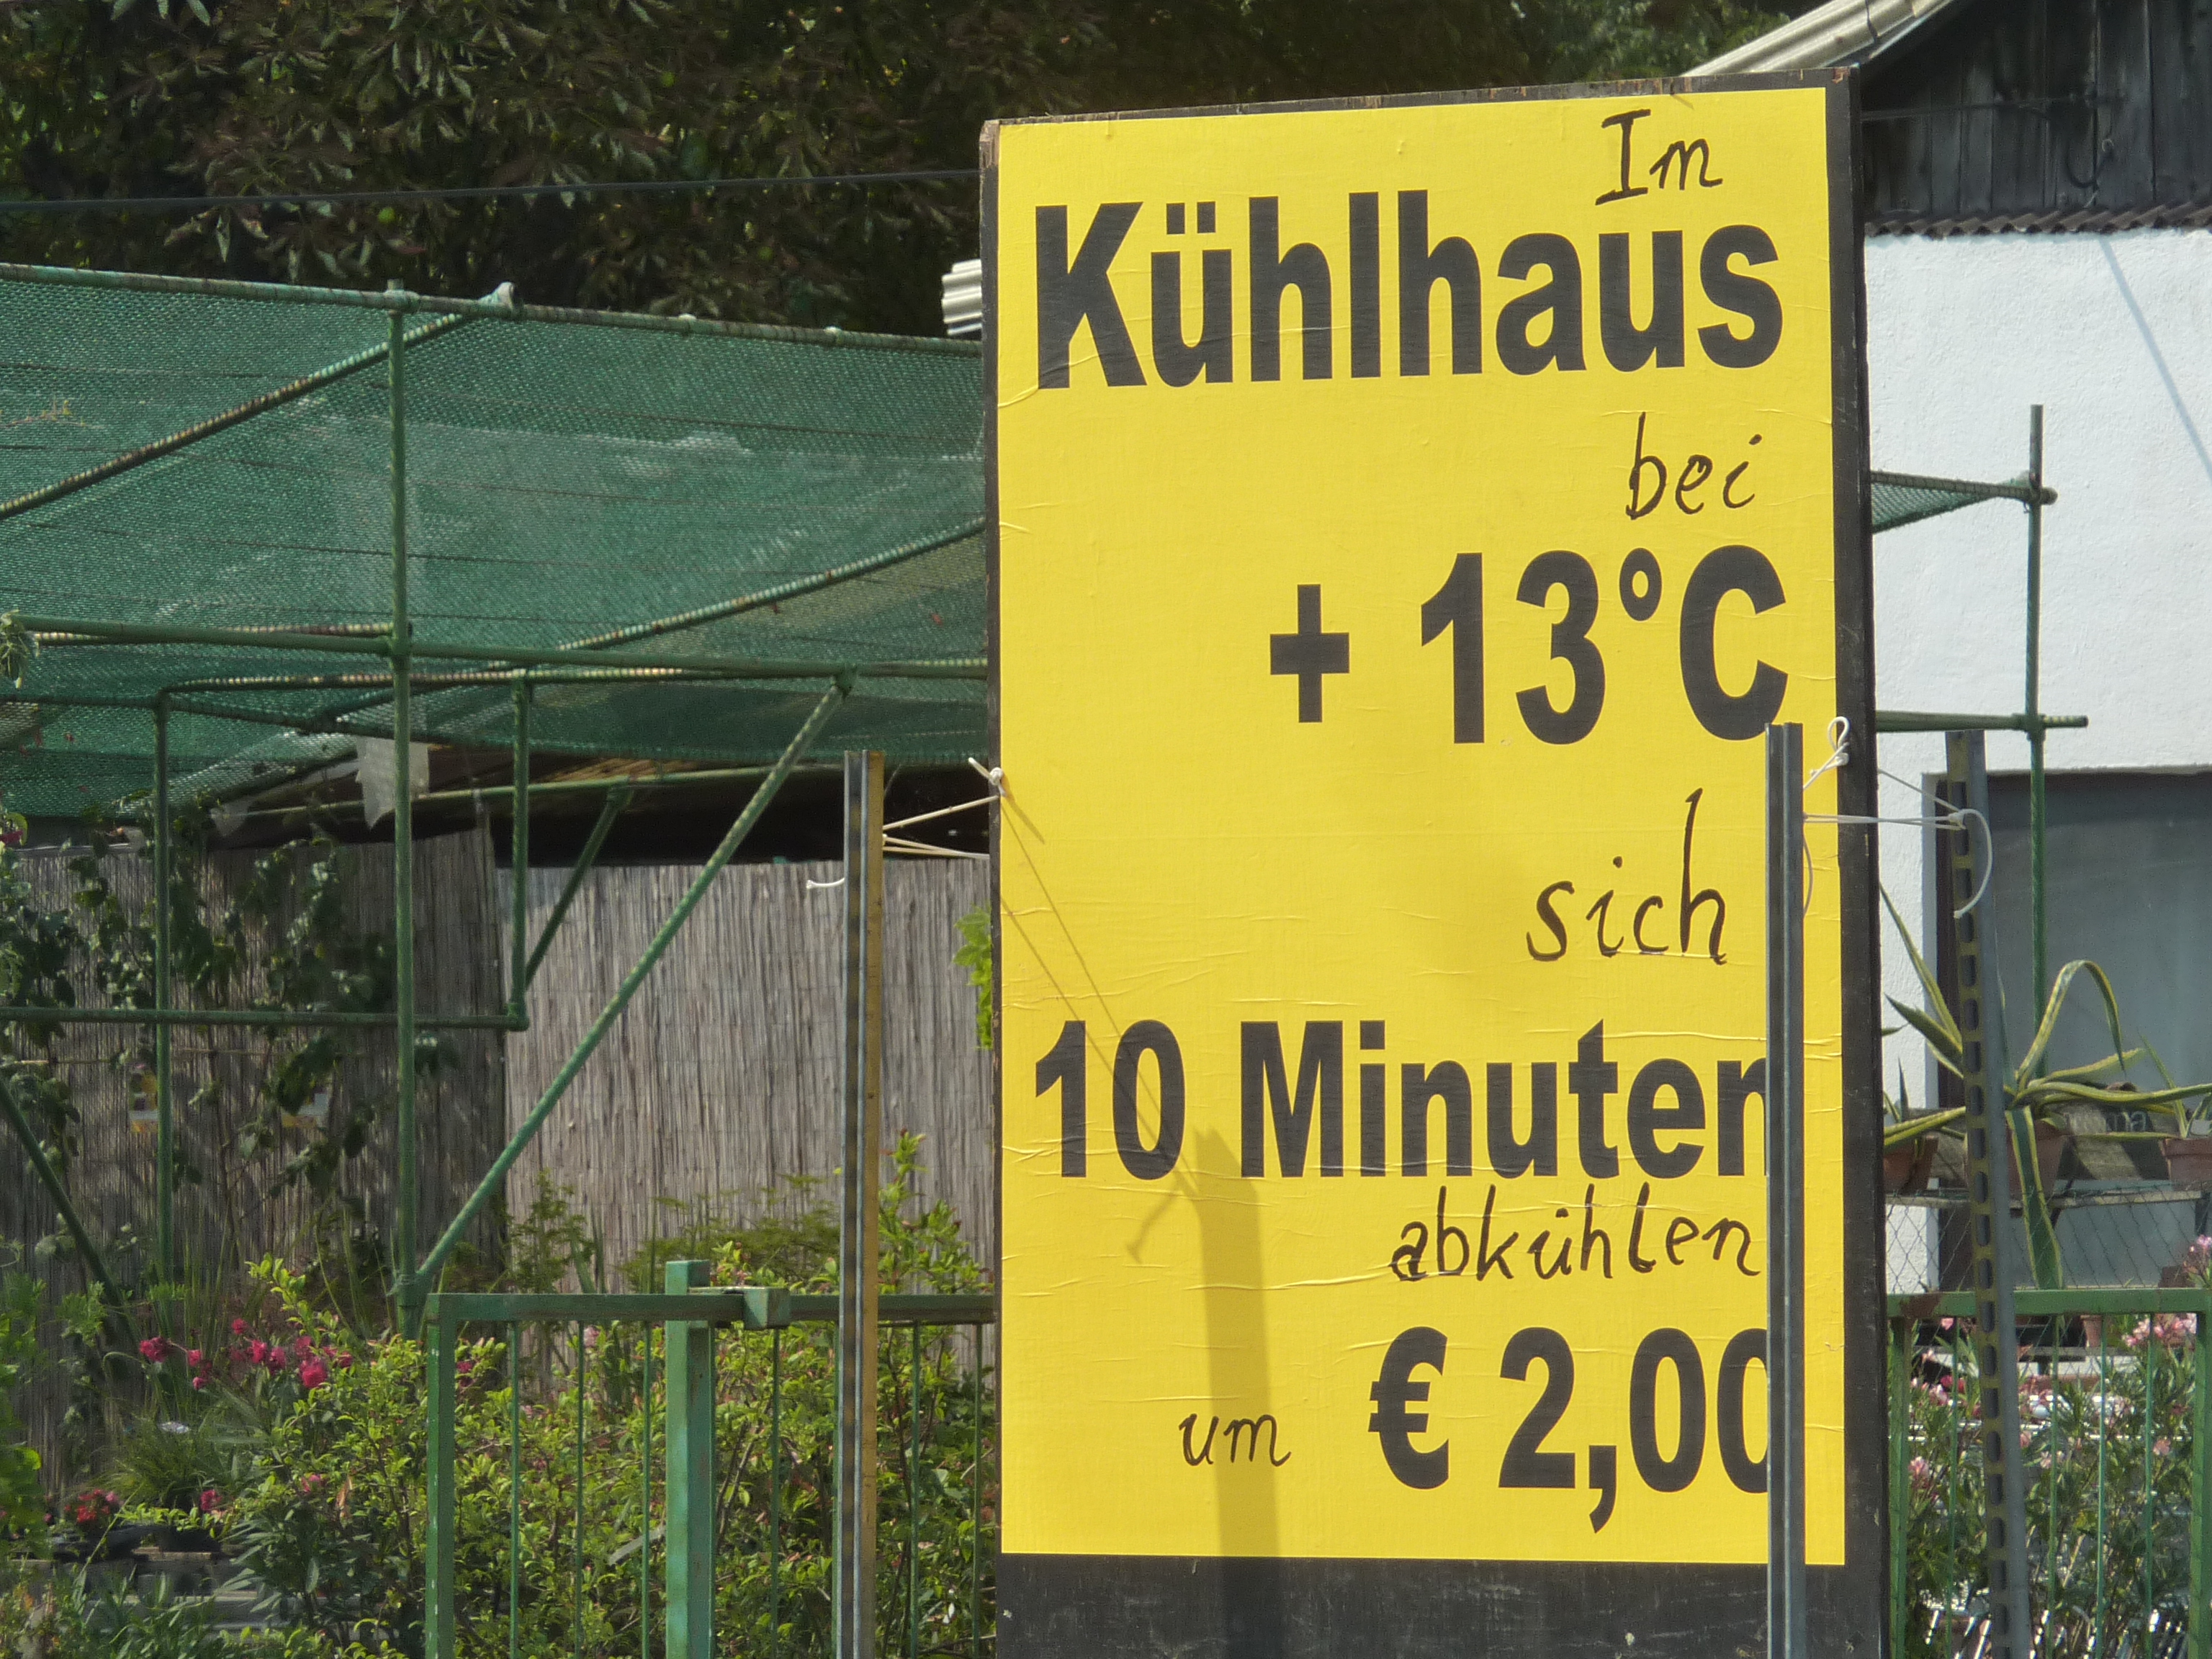 Im Kühlhaus bei + 13 Grad C sich 10 Minuten abkühlen um € 2,00.